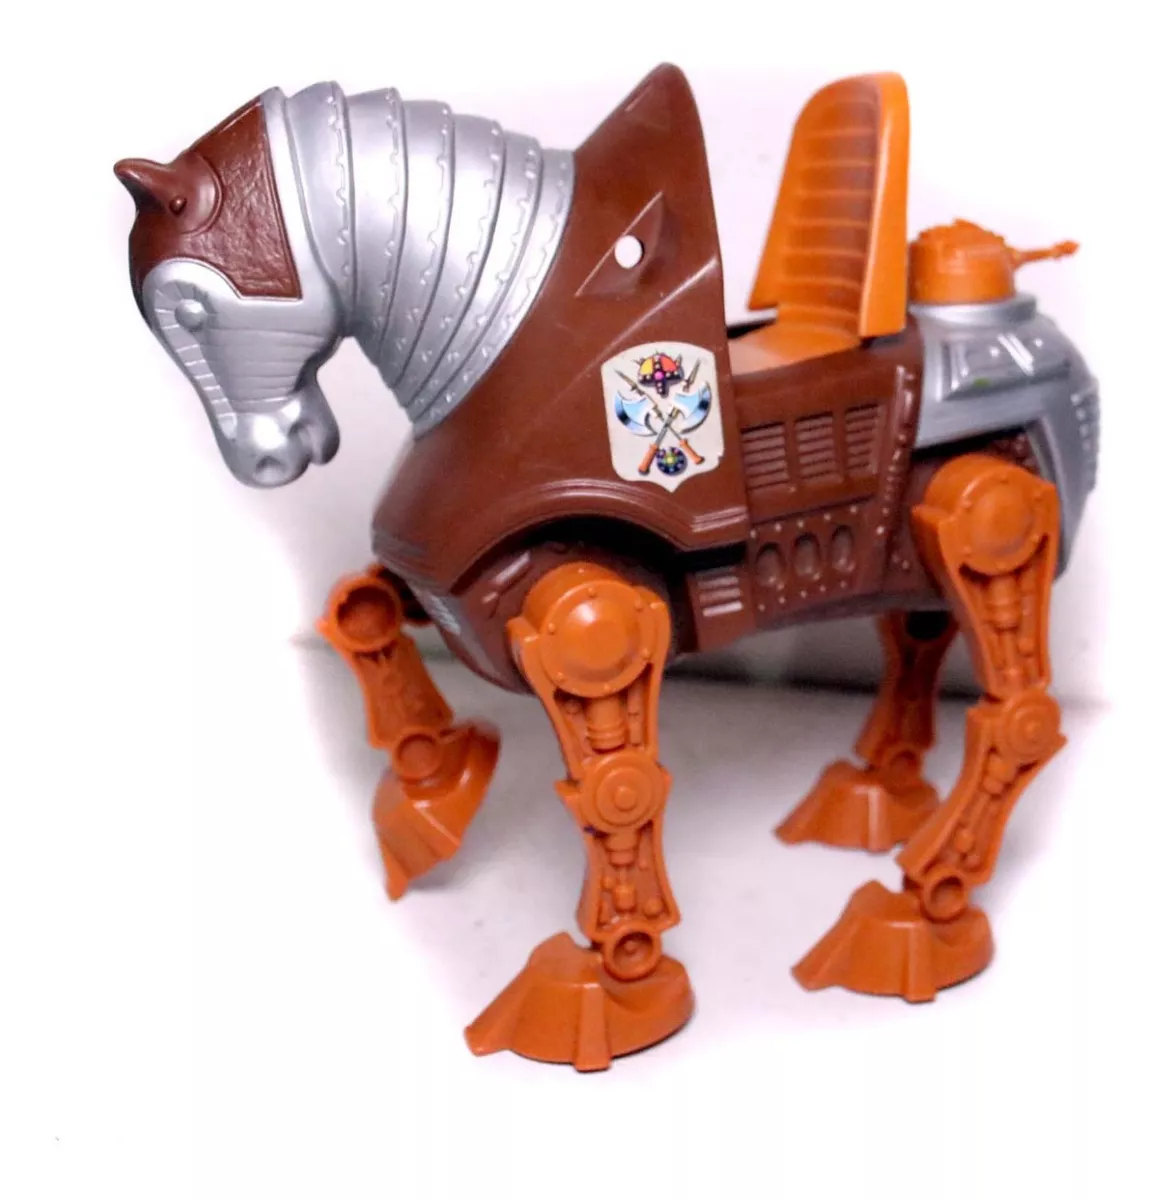 Boneco Cavalo Stridor Gladiador He-man Anos 80 Mattel Motu